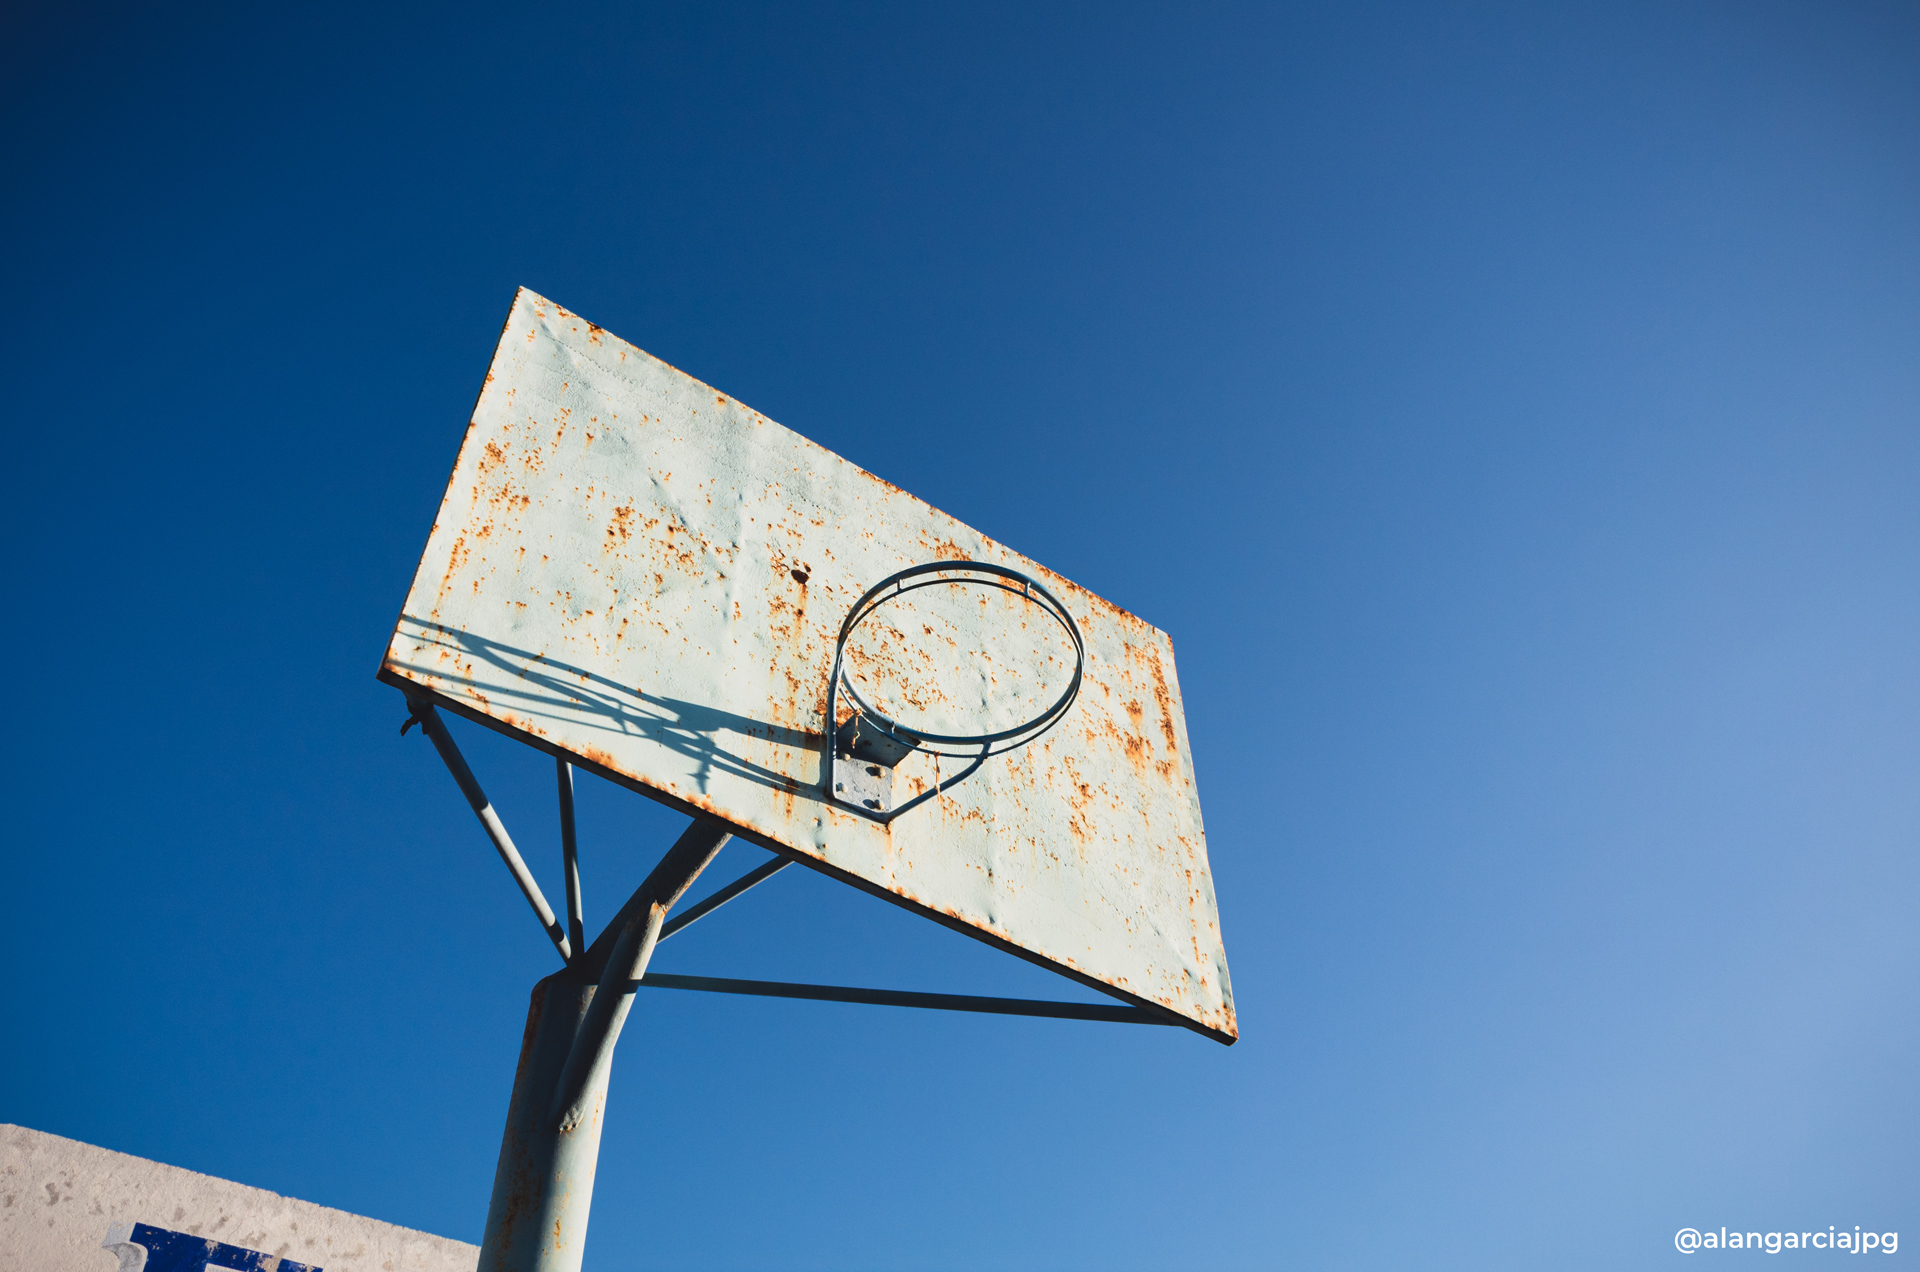 Vieja y oxidada canasta de baloncesto con un cielo azul.